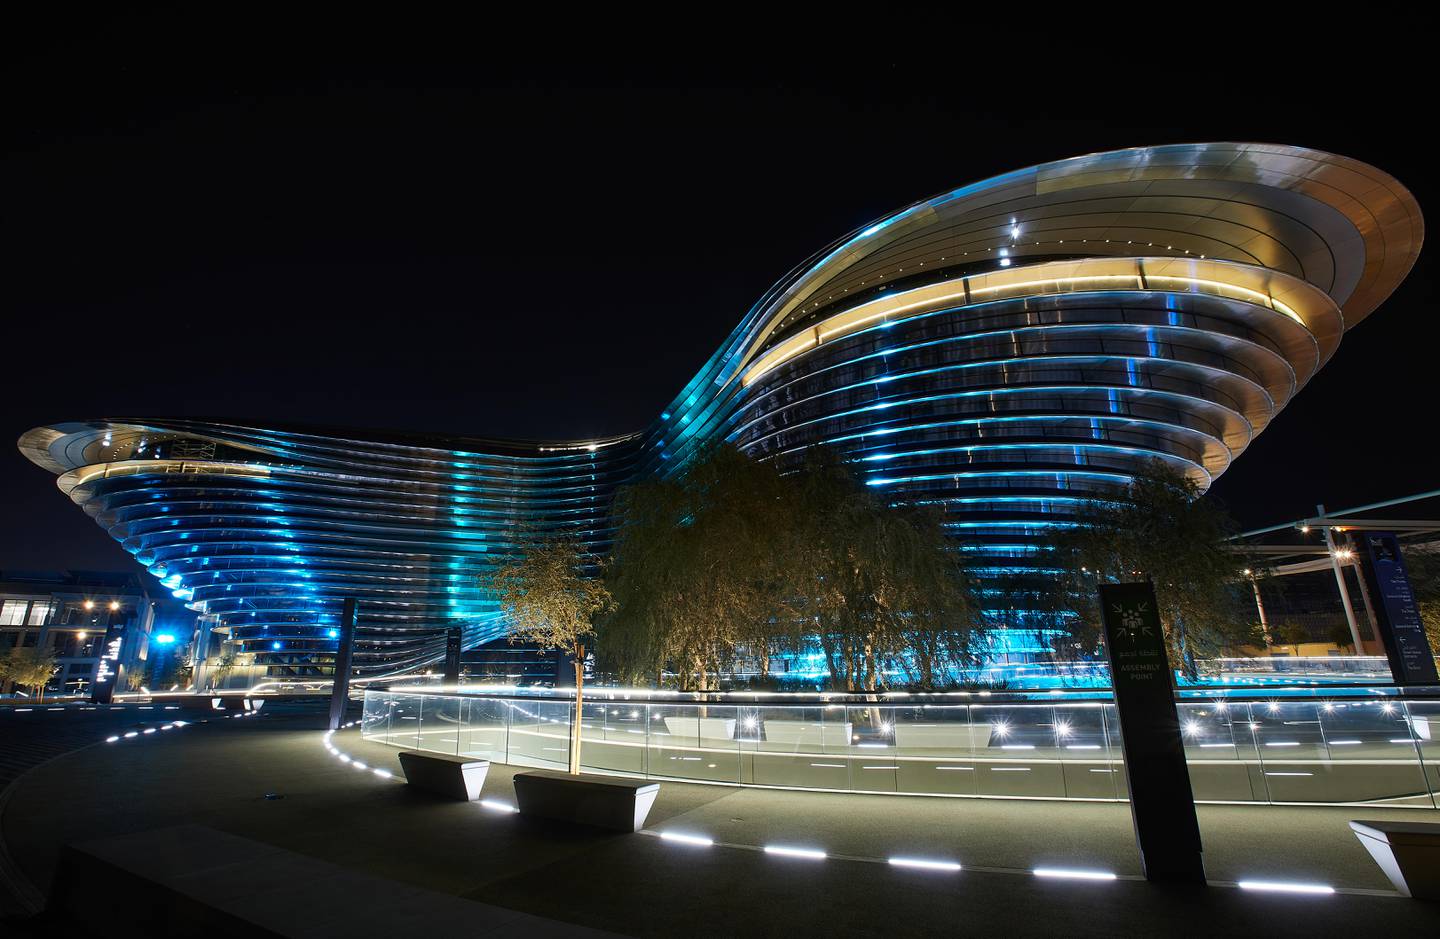 Alif - The Mobility Pavilion at Expo 2020 Dubai. Photo: Expo 2020 Dubai